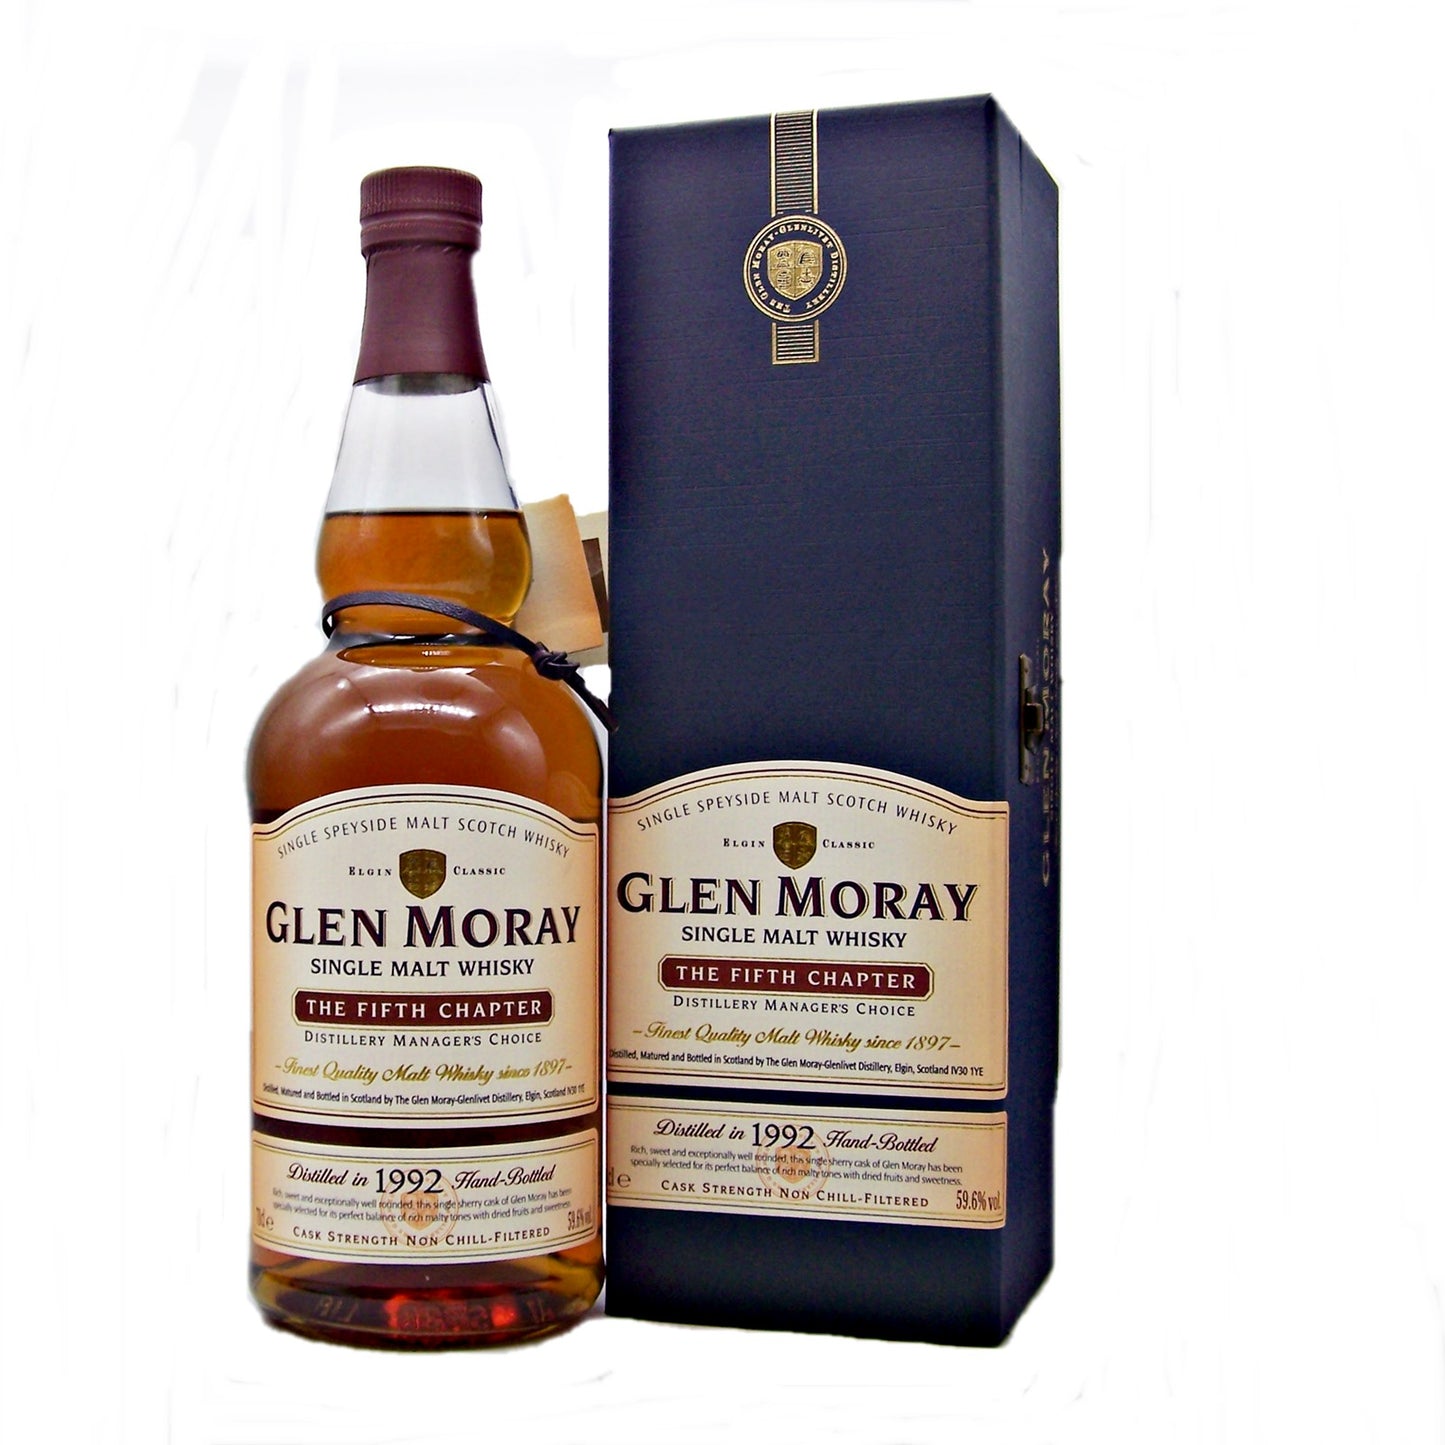 Glen Moray 1995 Single Sherry Cask